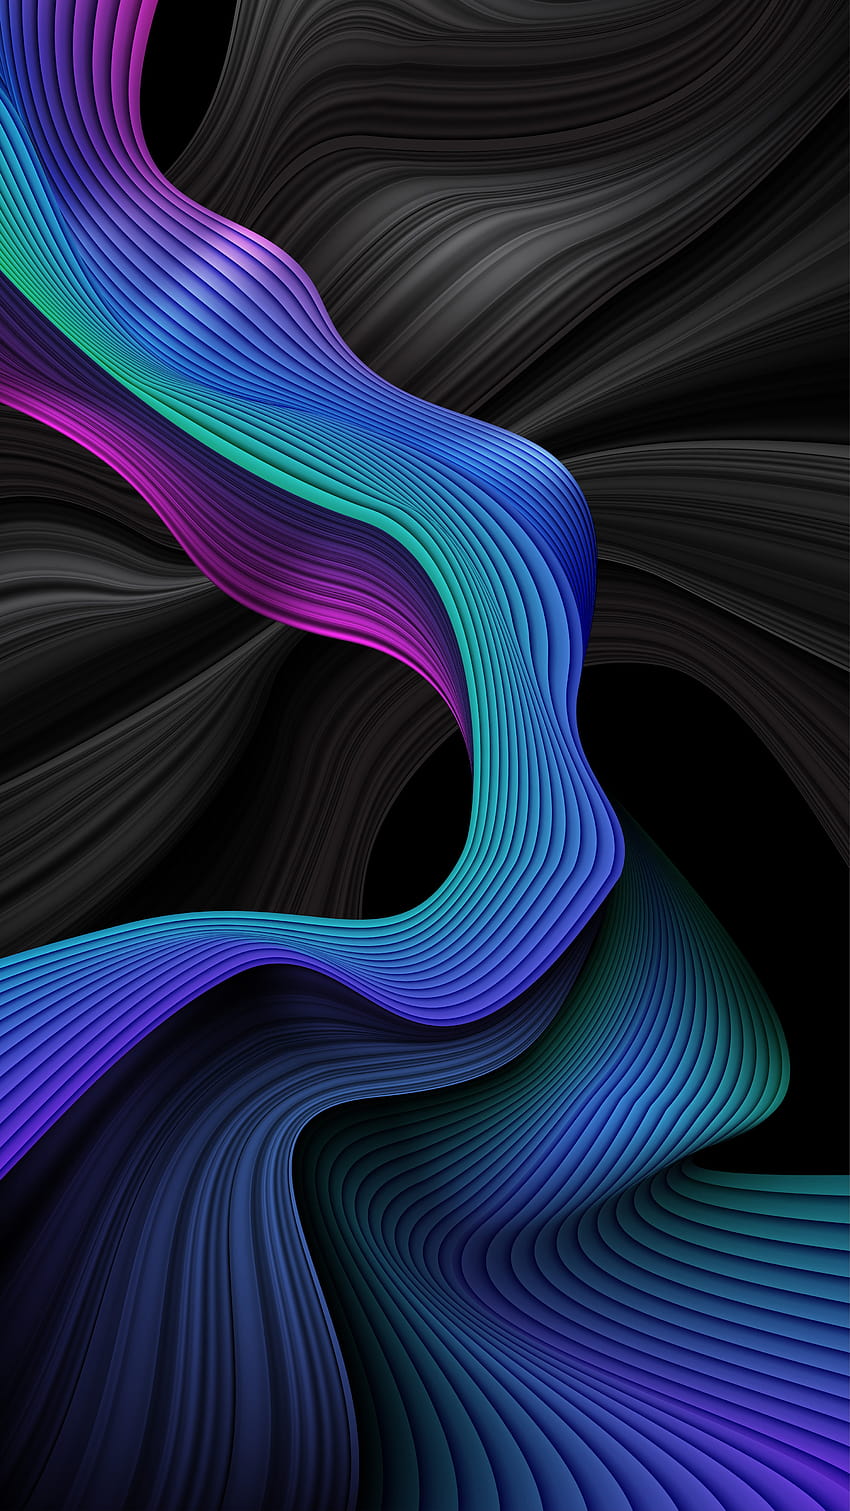 Abstrakte Wellenstreifen-Hintergründe in Blau und Schwarz 1211544 Vektorgrafiken bei Vecteezy, bunte spiralförmige Wellenlinien HD-Handy-Hintergrundbild